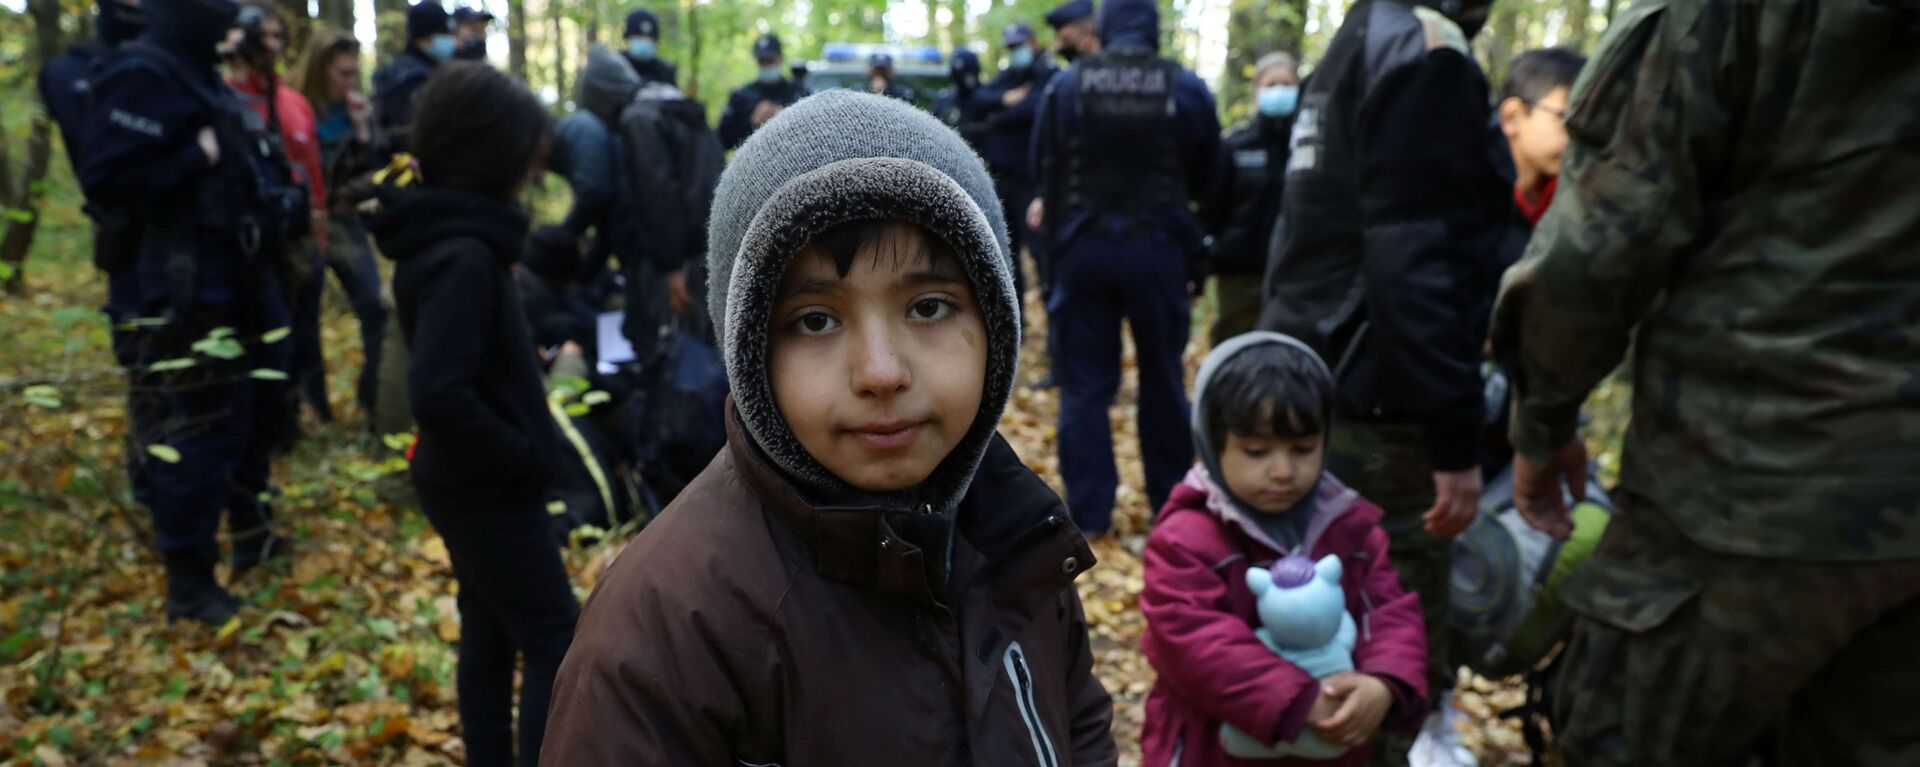 Иракский ребенок в окружении пограничников и полицейских после пересечения белорусско-польской границы в городе Хайнувка, Польша - Sputnik Moldova-România, 1920, 16.10.2021